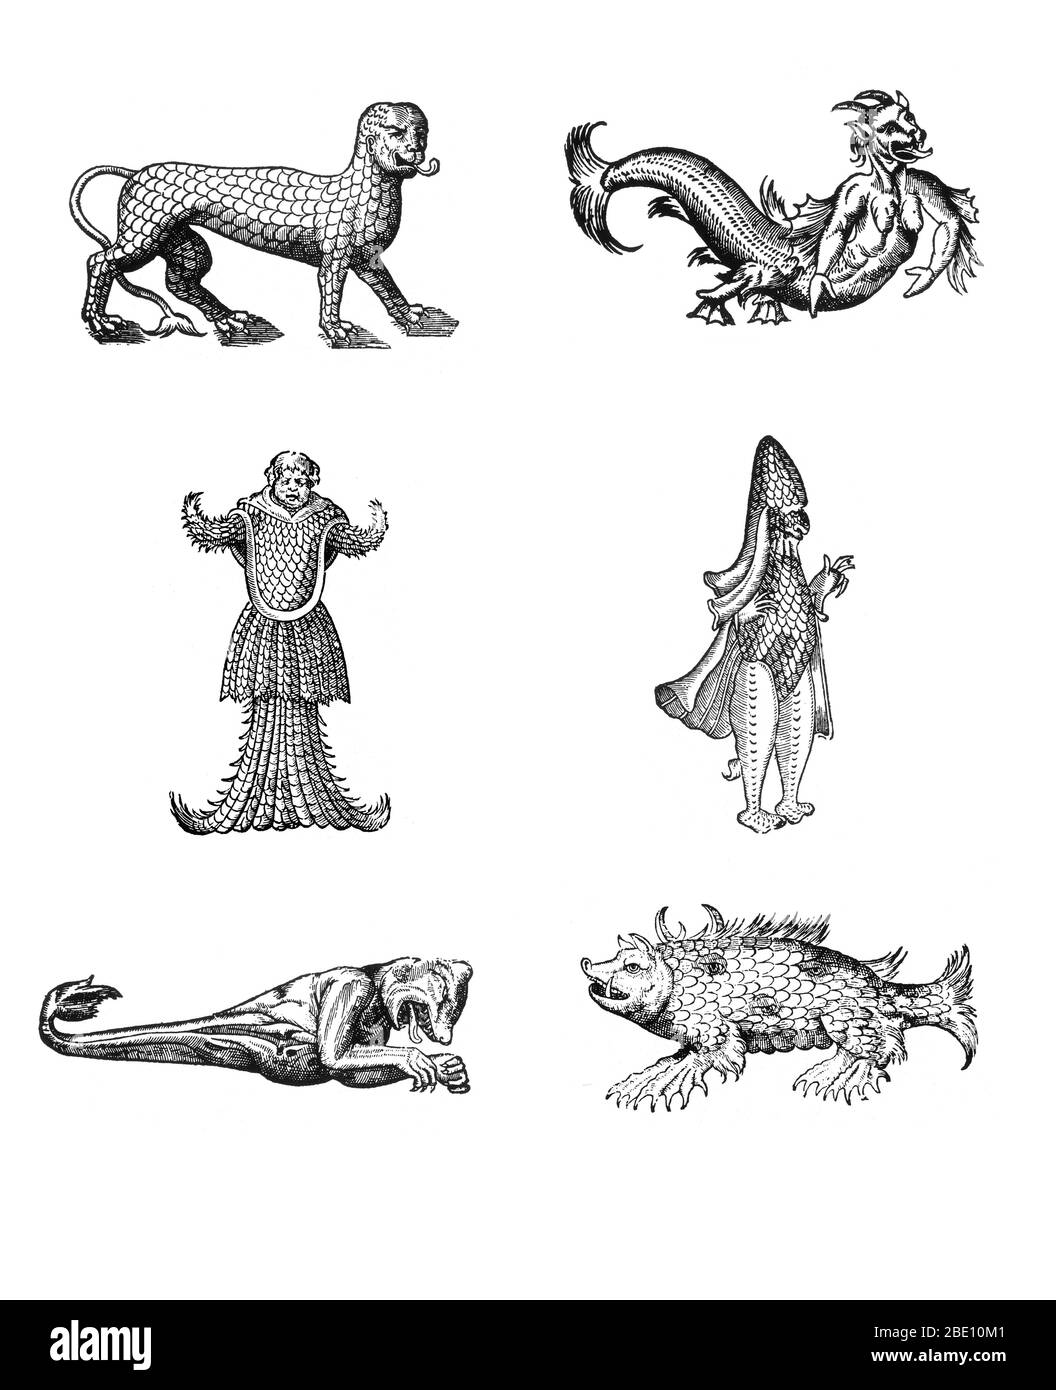 Cortes de monstruos marinos de Des Monstres et prodiges de Ambroise Paré, 1573, en el sentido de las agujas del reloj desde la parte superior izquierda: 'León marino cubierto de escamas', 'figura horrible de un diablo marino', 'monstruo marino que se asemeja a un obispo vestido con sus vestiduras pontificias', 'cerda marina', 'Monstruo marino con la cabeza de un oso y los brazos de un mono', 'monstruo marino con la cabeza de un monje, armado y cubierto de escamas de pescado'. Des Monstres está lleno de relatos injustificados de demonios marinos, cerdas marinas y animales monstruosos con rostros humanos. Con su extensa discusión sobre la reproducción y las ilustraciones del nacimiento Foto de stock